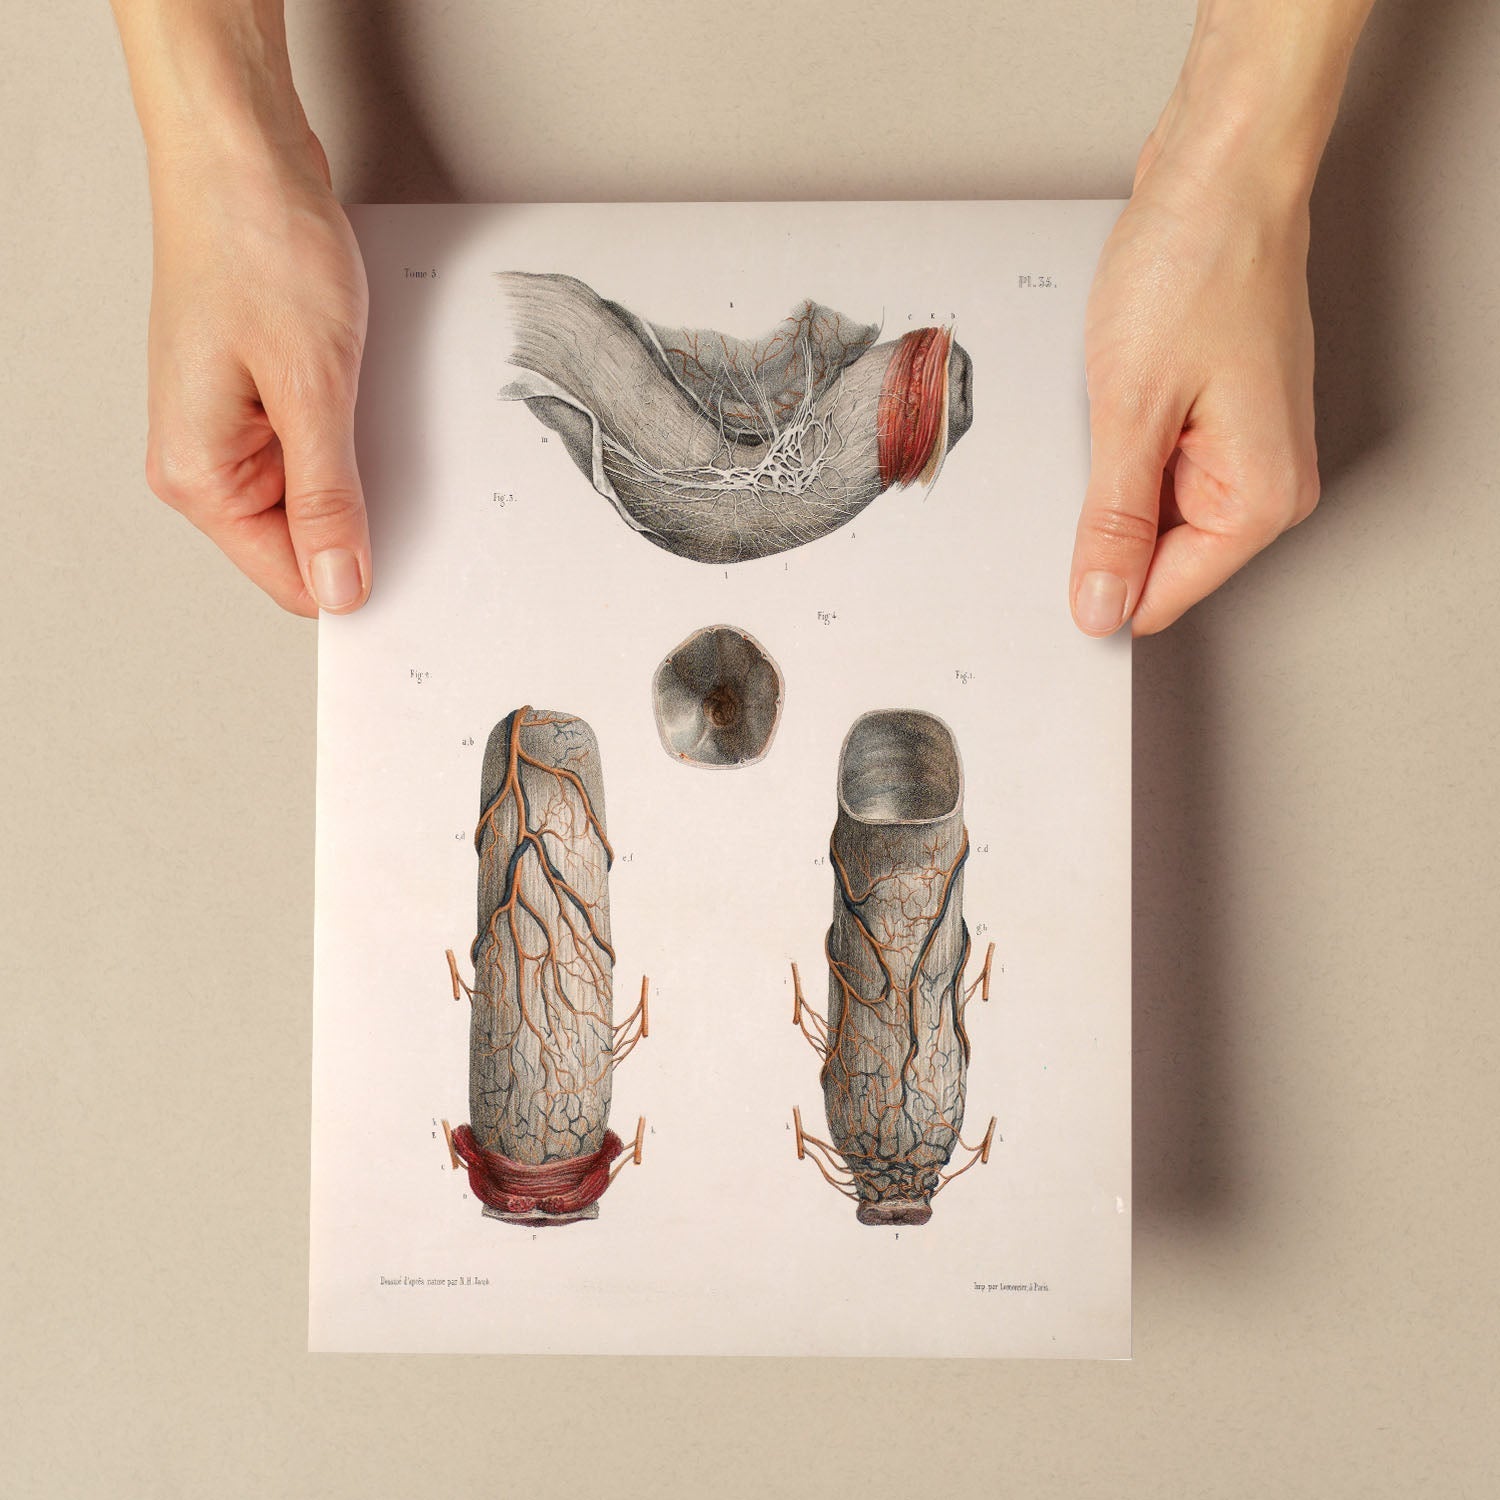 Large intestine, rectum and anus-Artwork-Nacnic-Nacnic Estudio SL